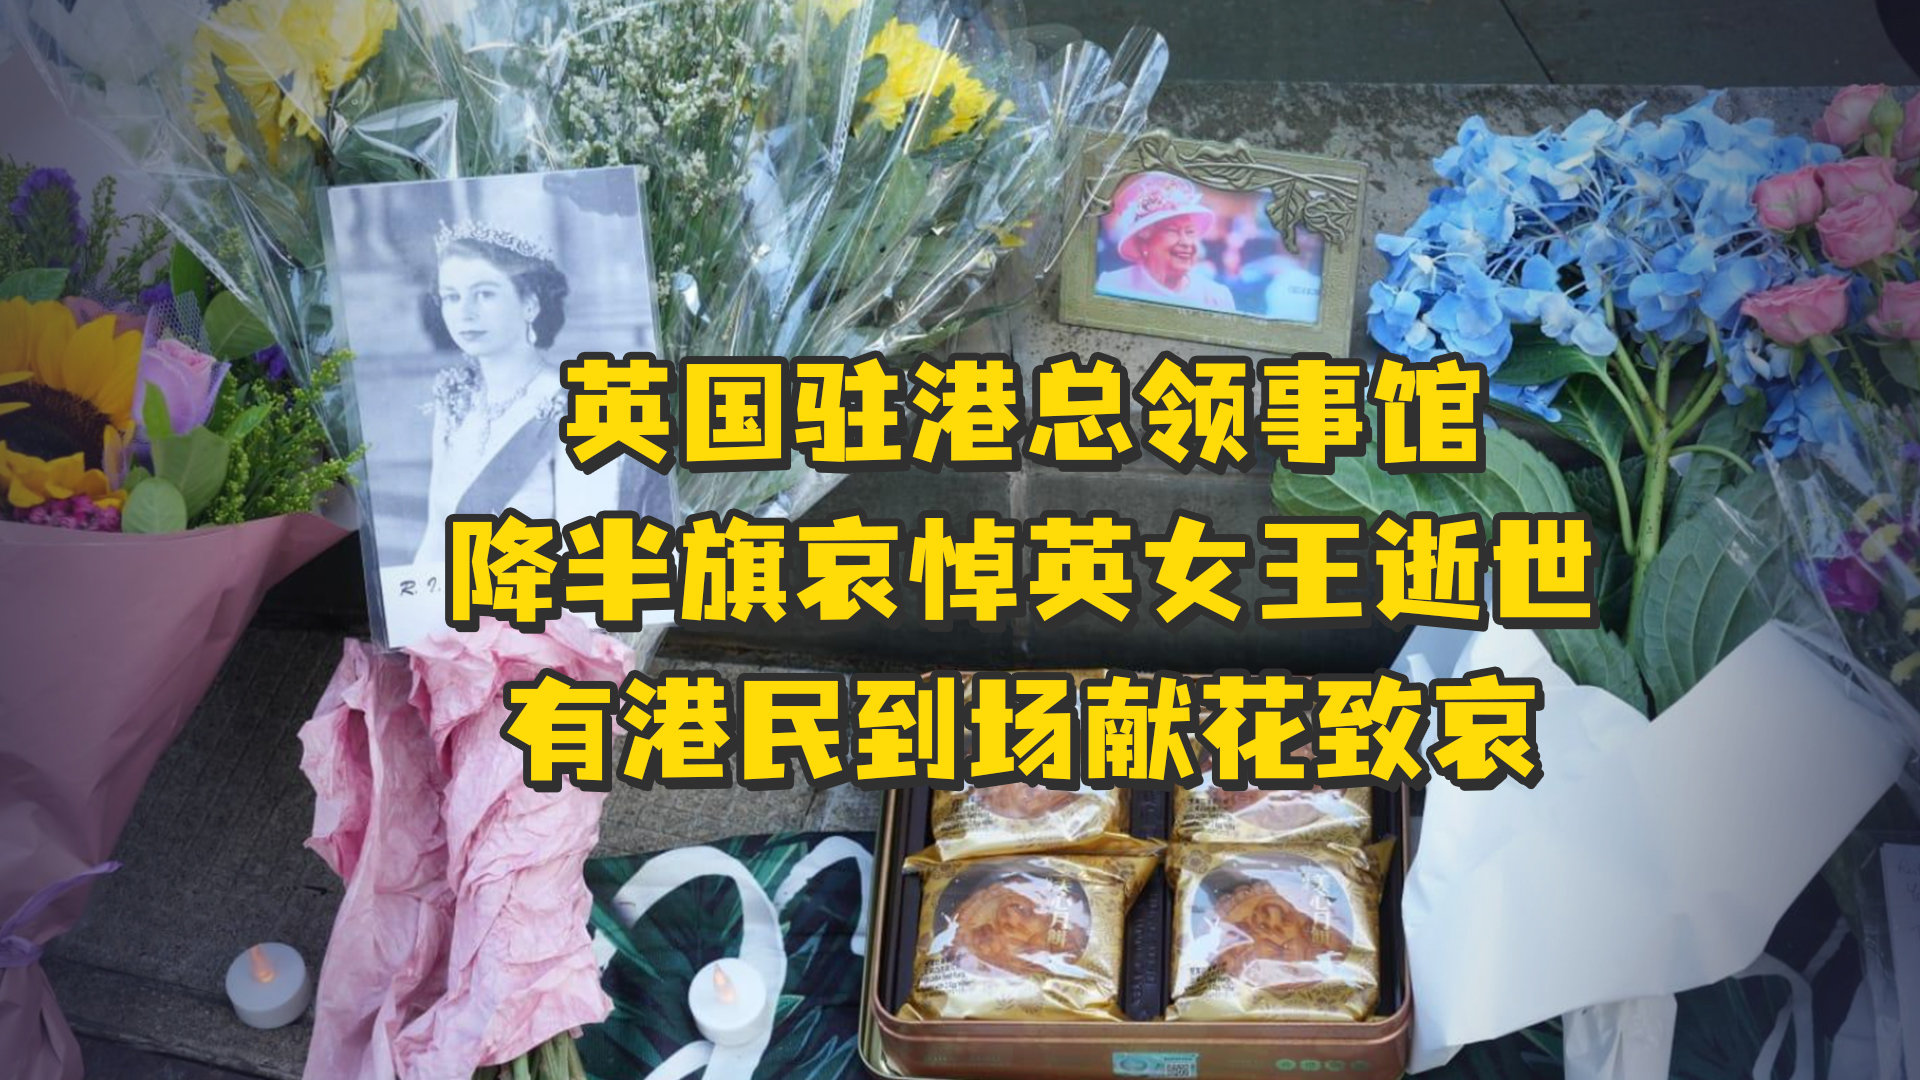 图集丨郑州地铁沙口路站现鲜花与悼念卡 解放军战士附近街道执行清淤任务 | 每经网